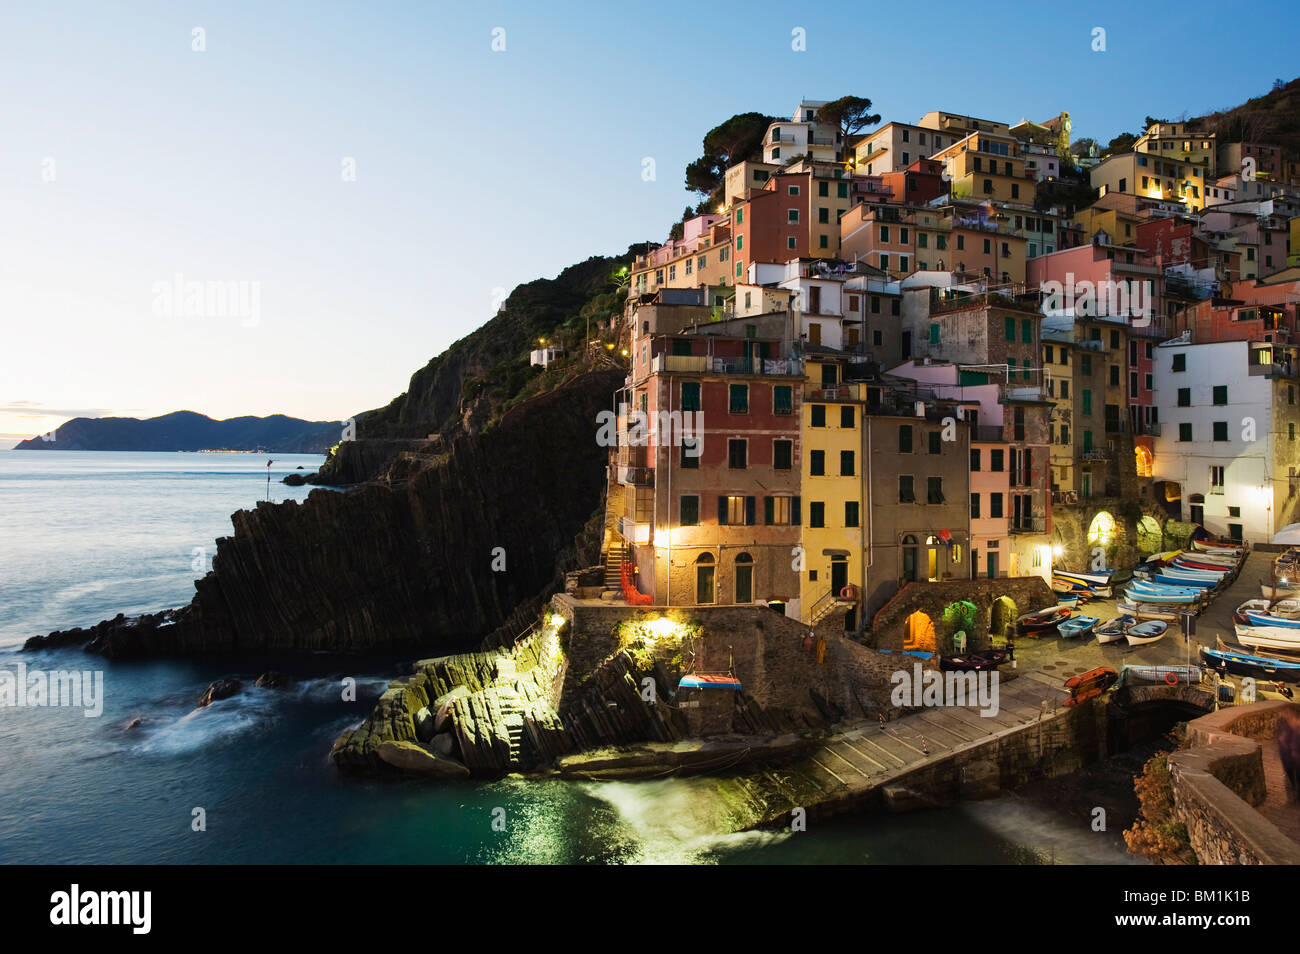 Clifftop borgo di Riomaggiore, Cinque Terre, Sito Patrimonio Mondiale dell'UNESCO, Liguria, Italia, Europa Foto Stock